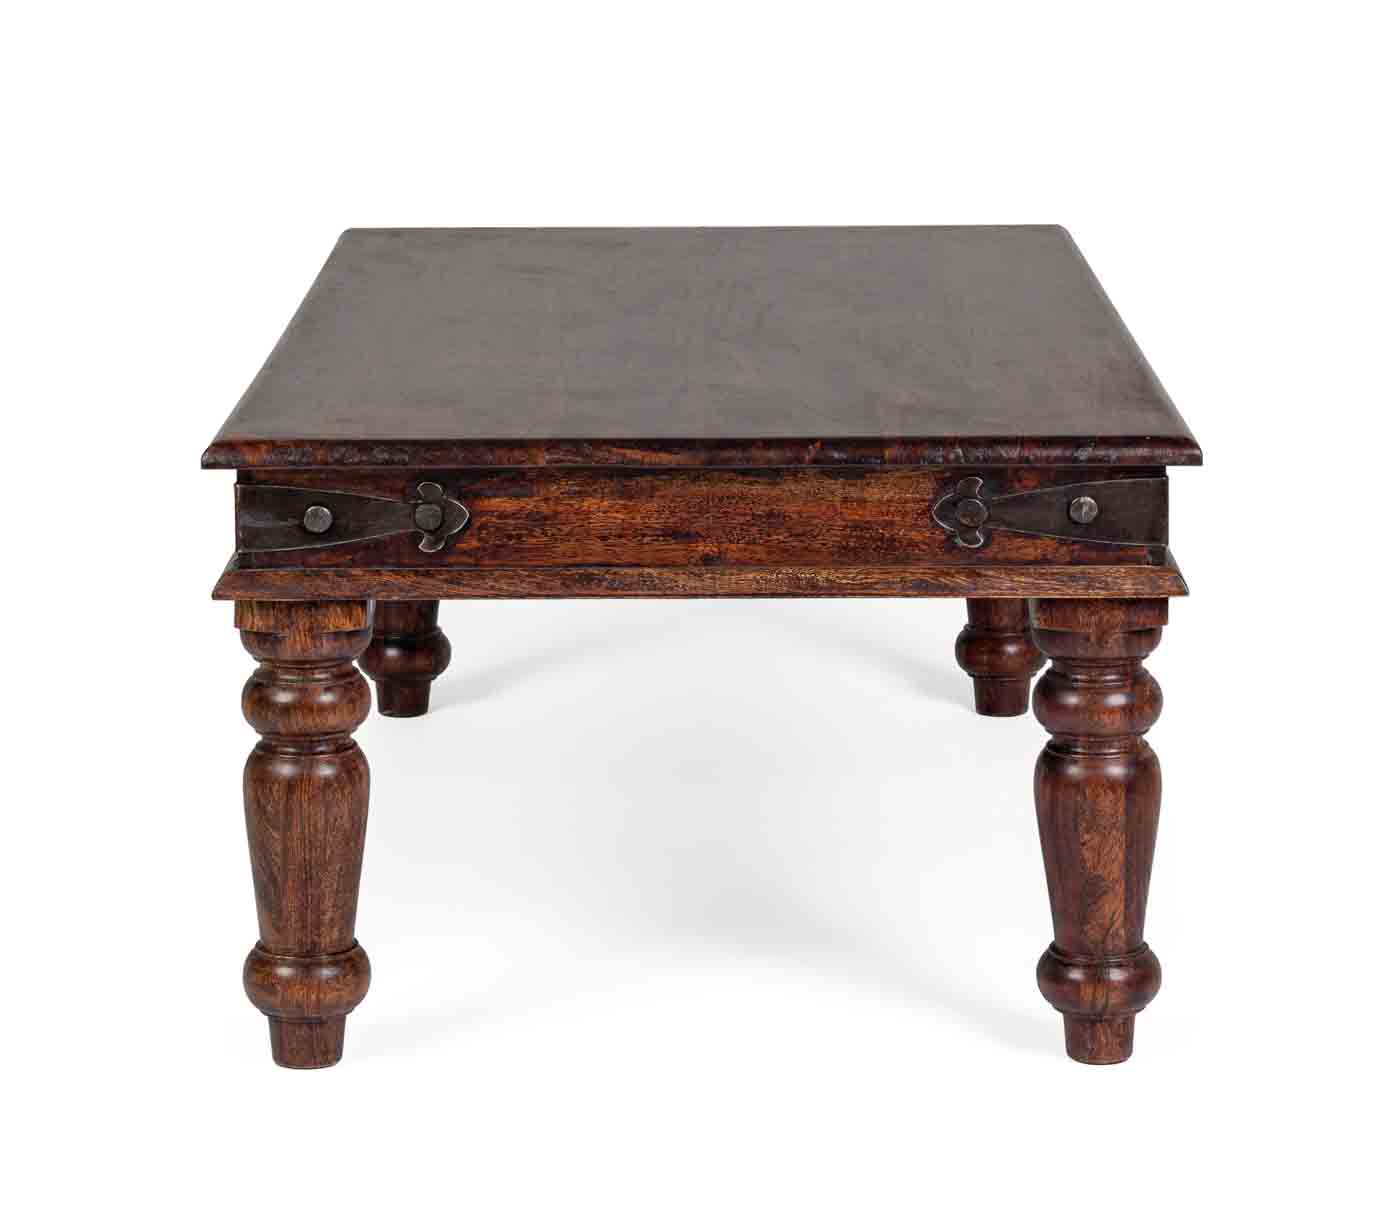 Der massive Beistelltisch Jaipur wurde aus Akazienholz gefertigt. Der Tisch wurde behandelt.